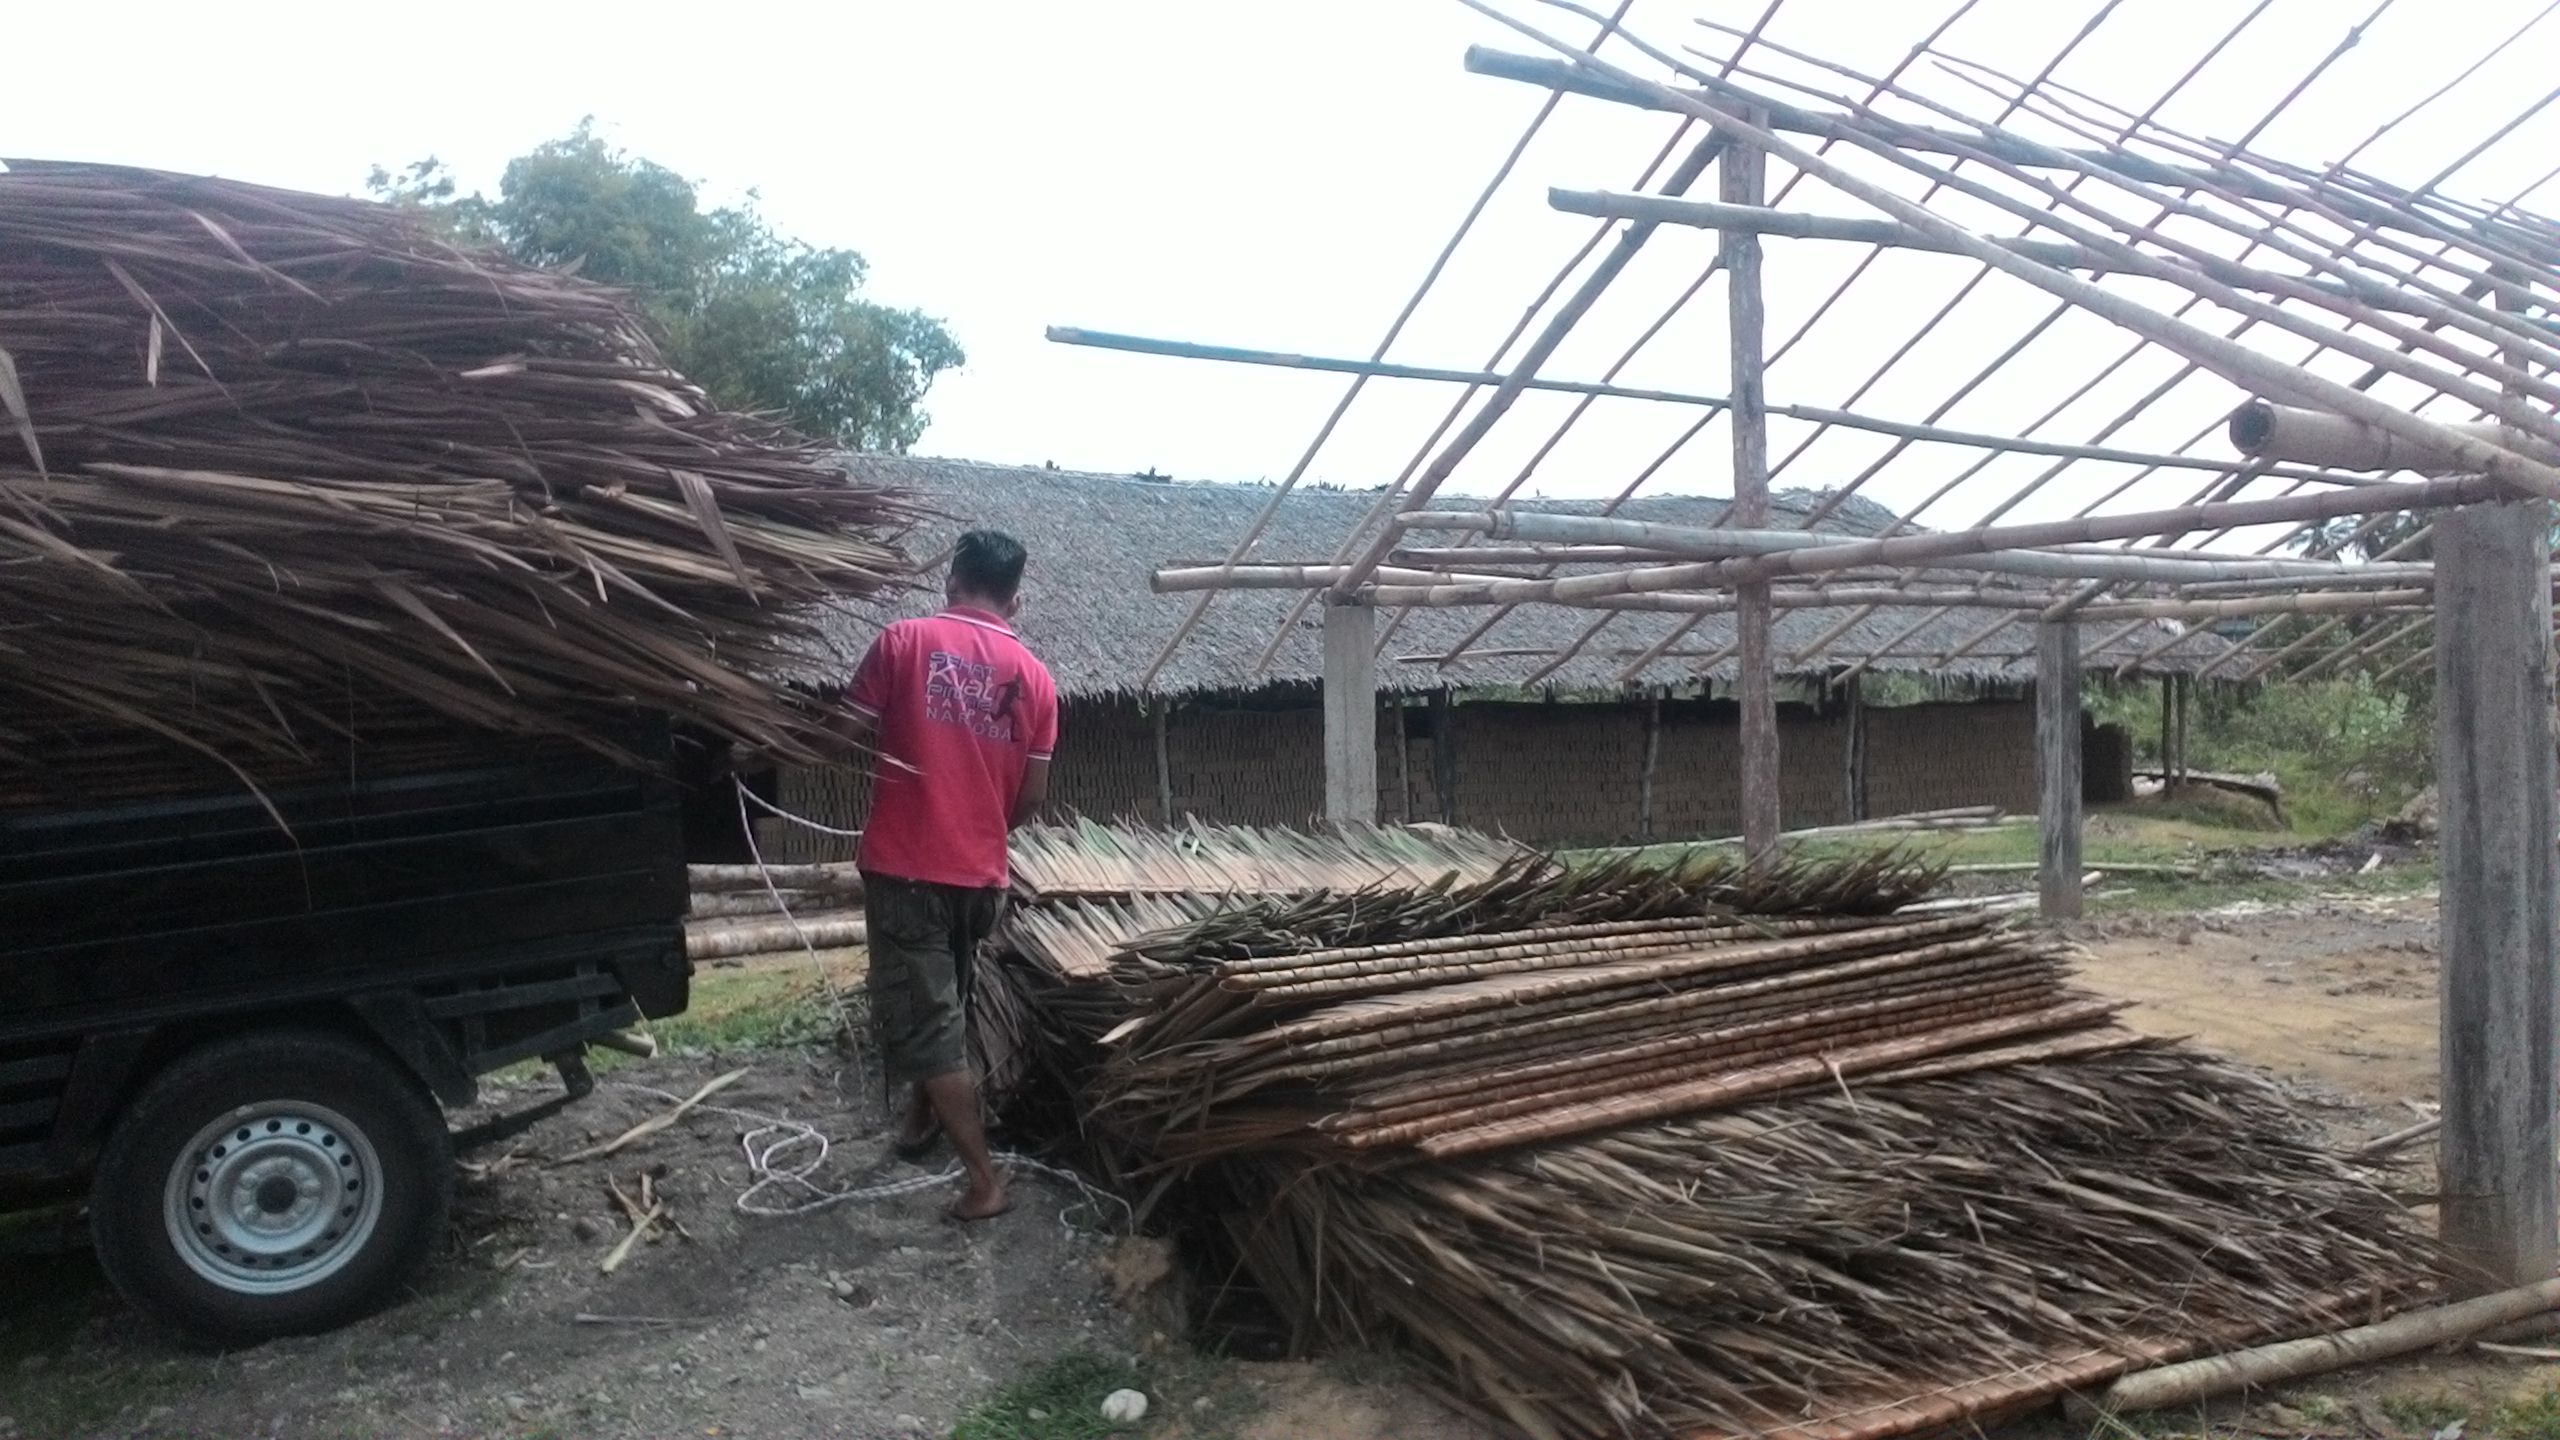 Seorang Pekerja Sedang Menurunkan Anyaman Daun Rumbia Di Tempat Produksi Batu Bata